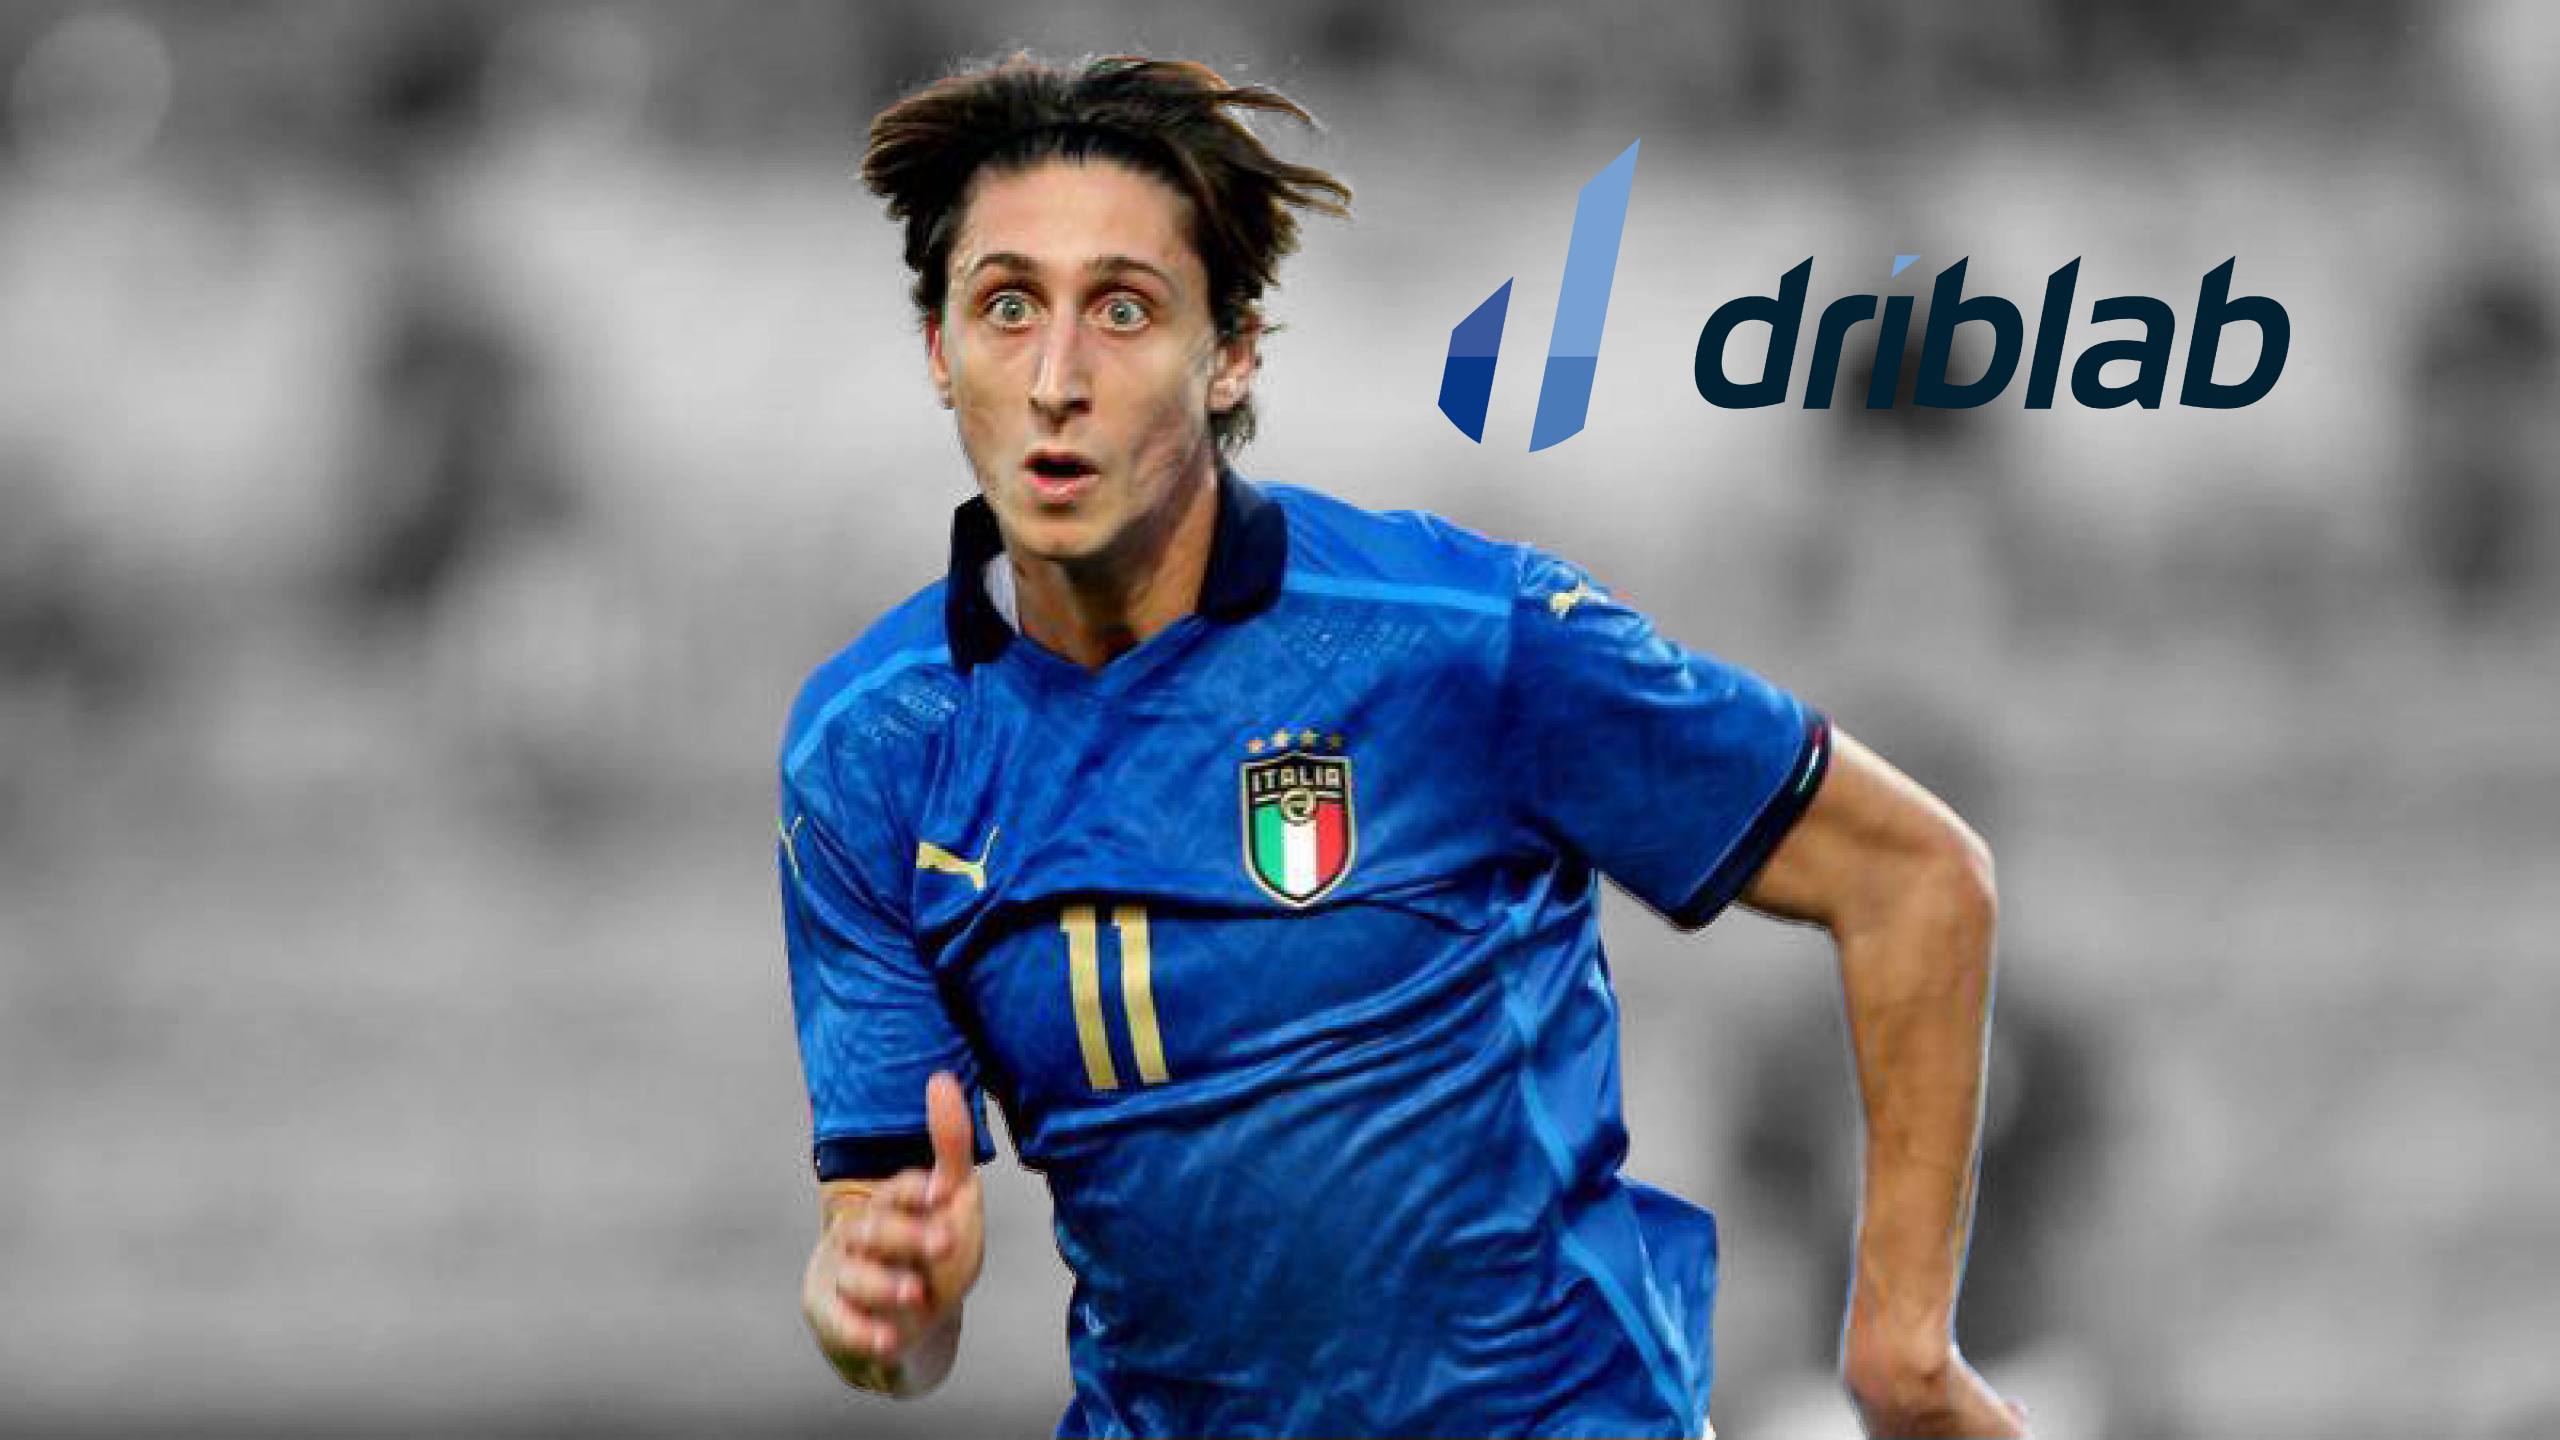 Serie B Italiana :: Itália :: Perfil da Competição 